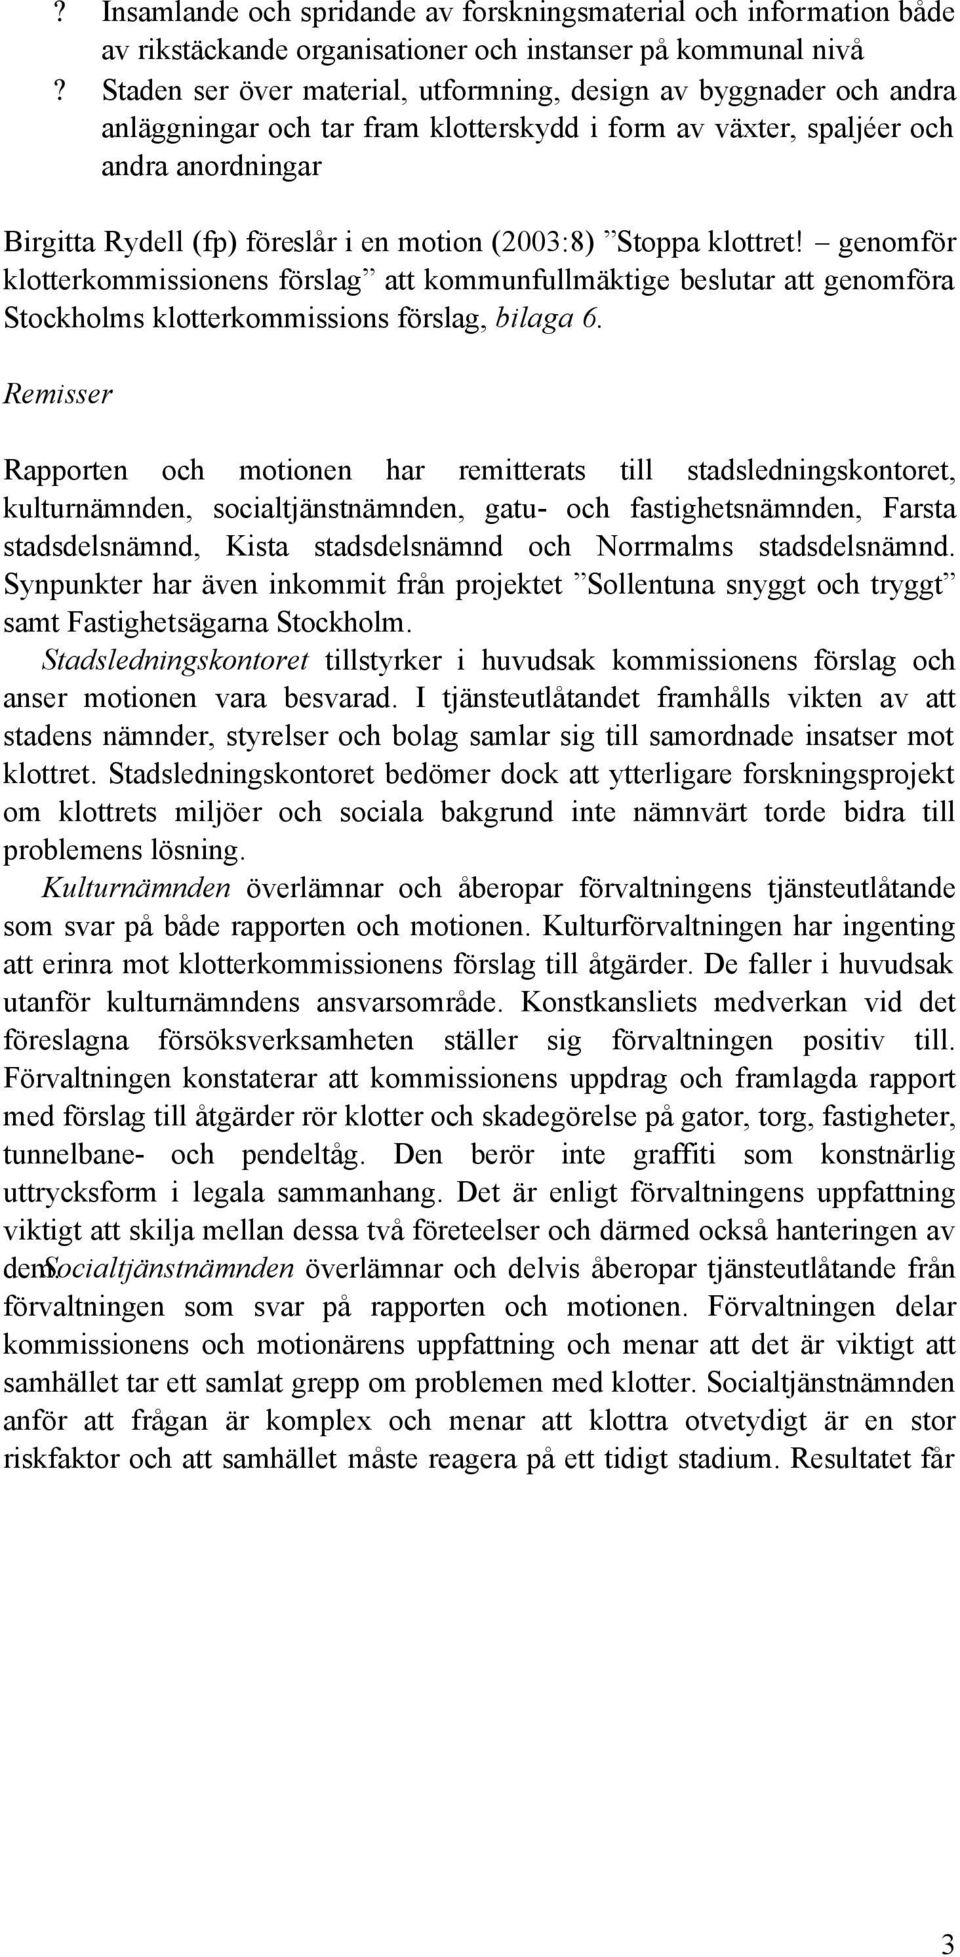 (2003:8) Stoppa klottret! genomför klotterkommissionens förslag att kommunfullmäktige beslutar att genomföra Stockholms klotterkommissions förslag, bilaga 6.